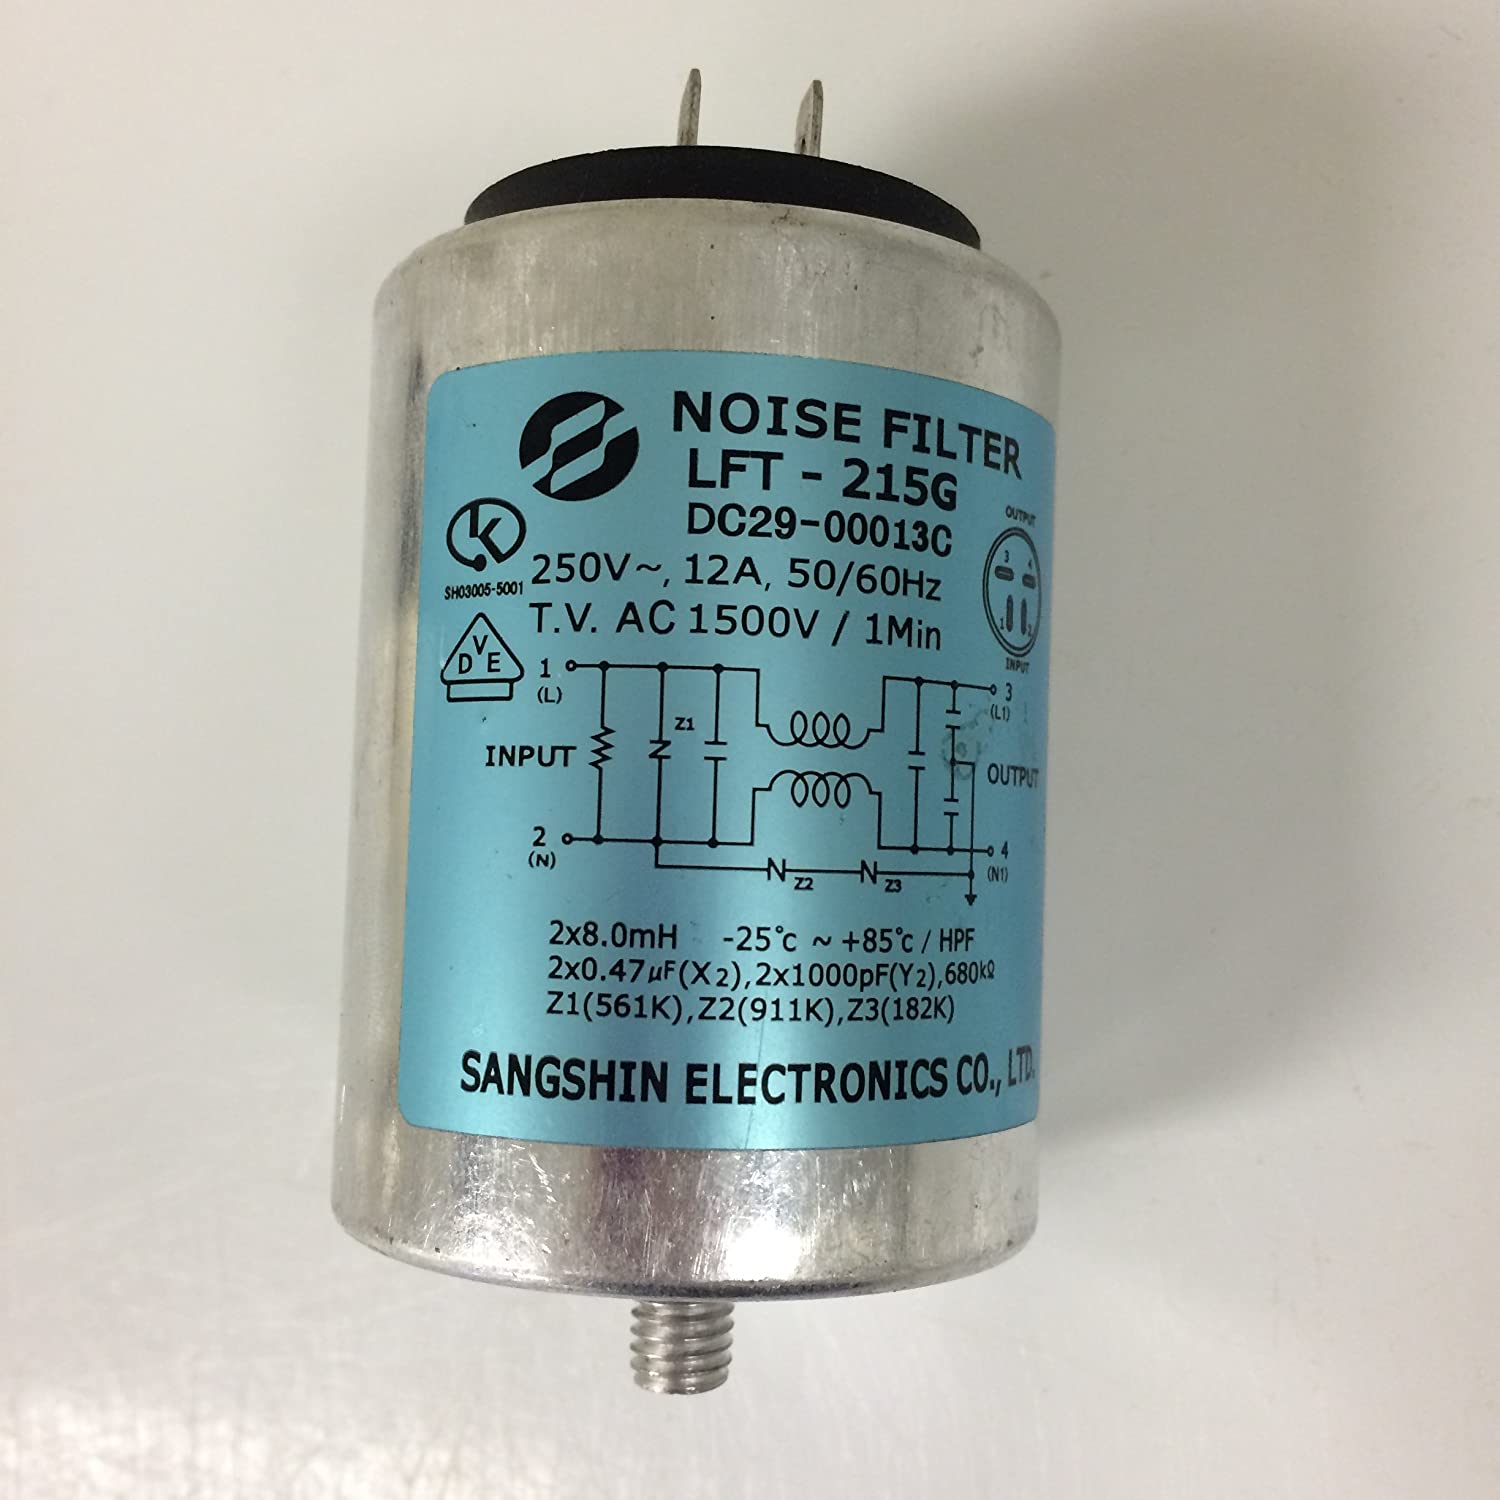 Samsung Washer Noise Filter Canceler. Part #DC29-00013C